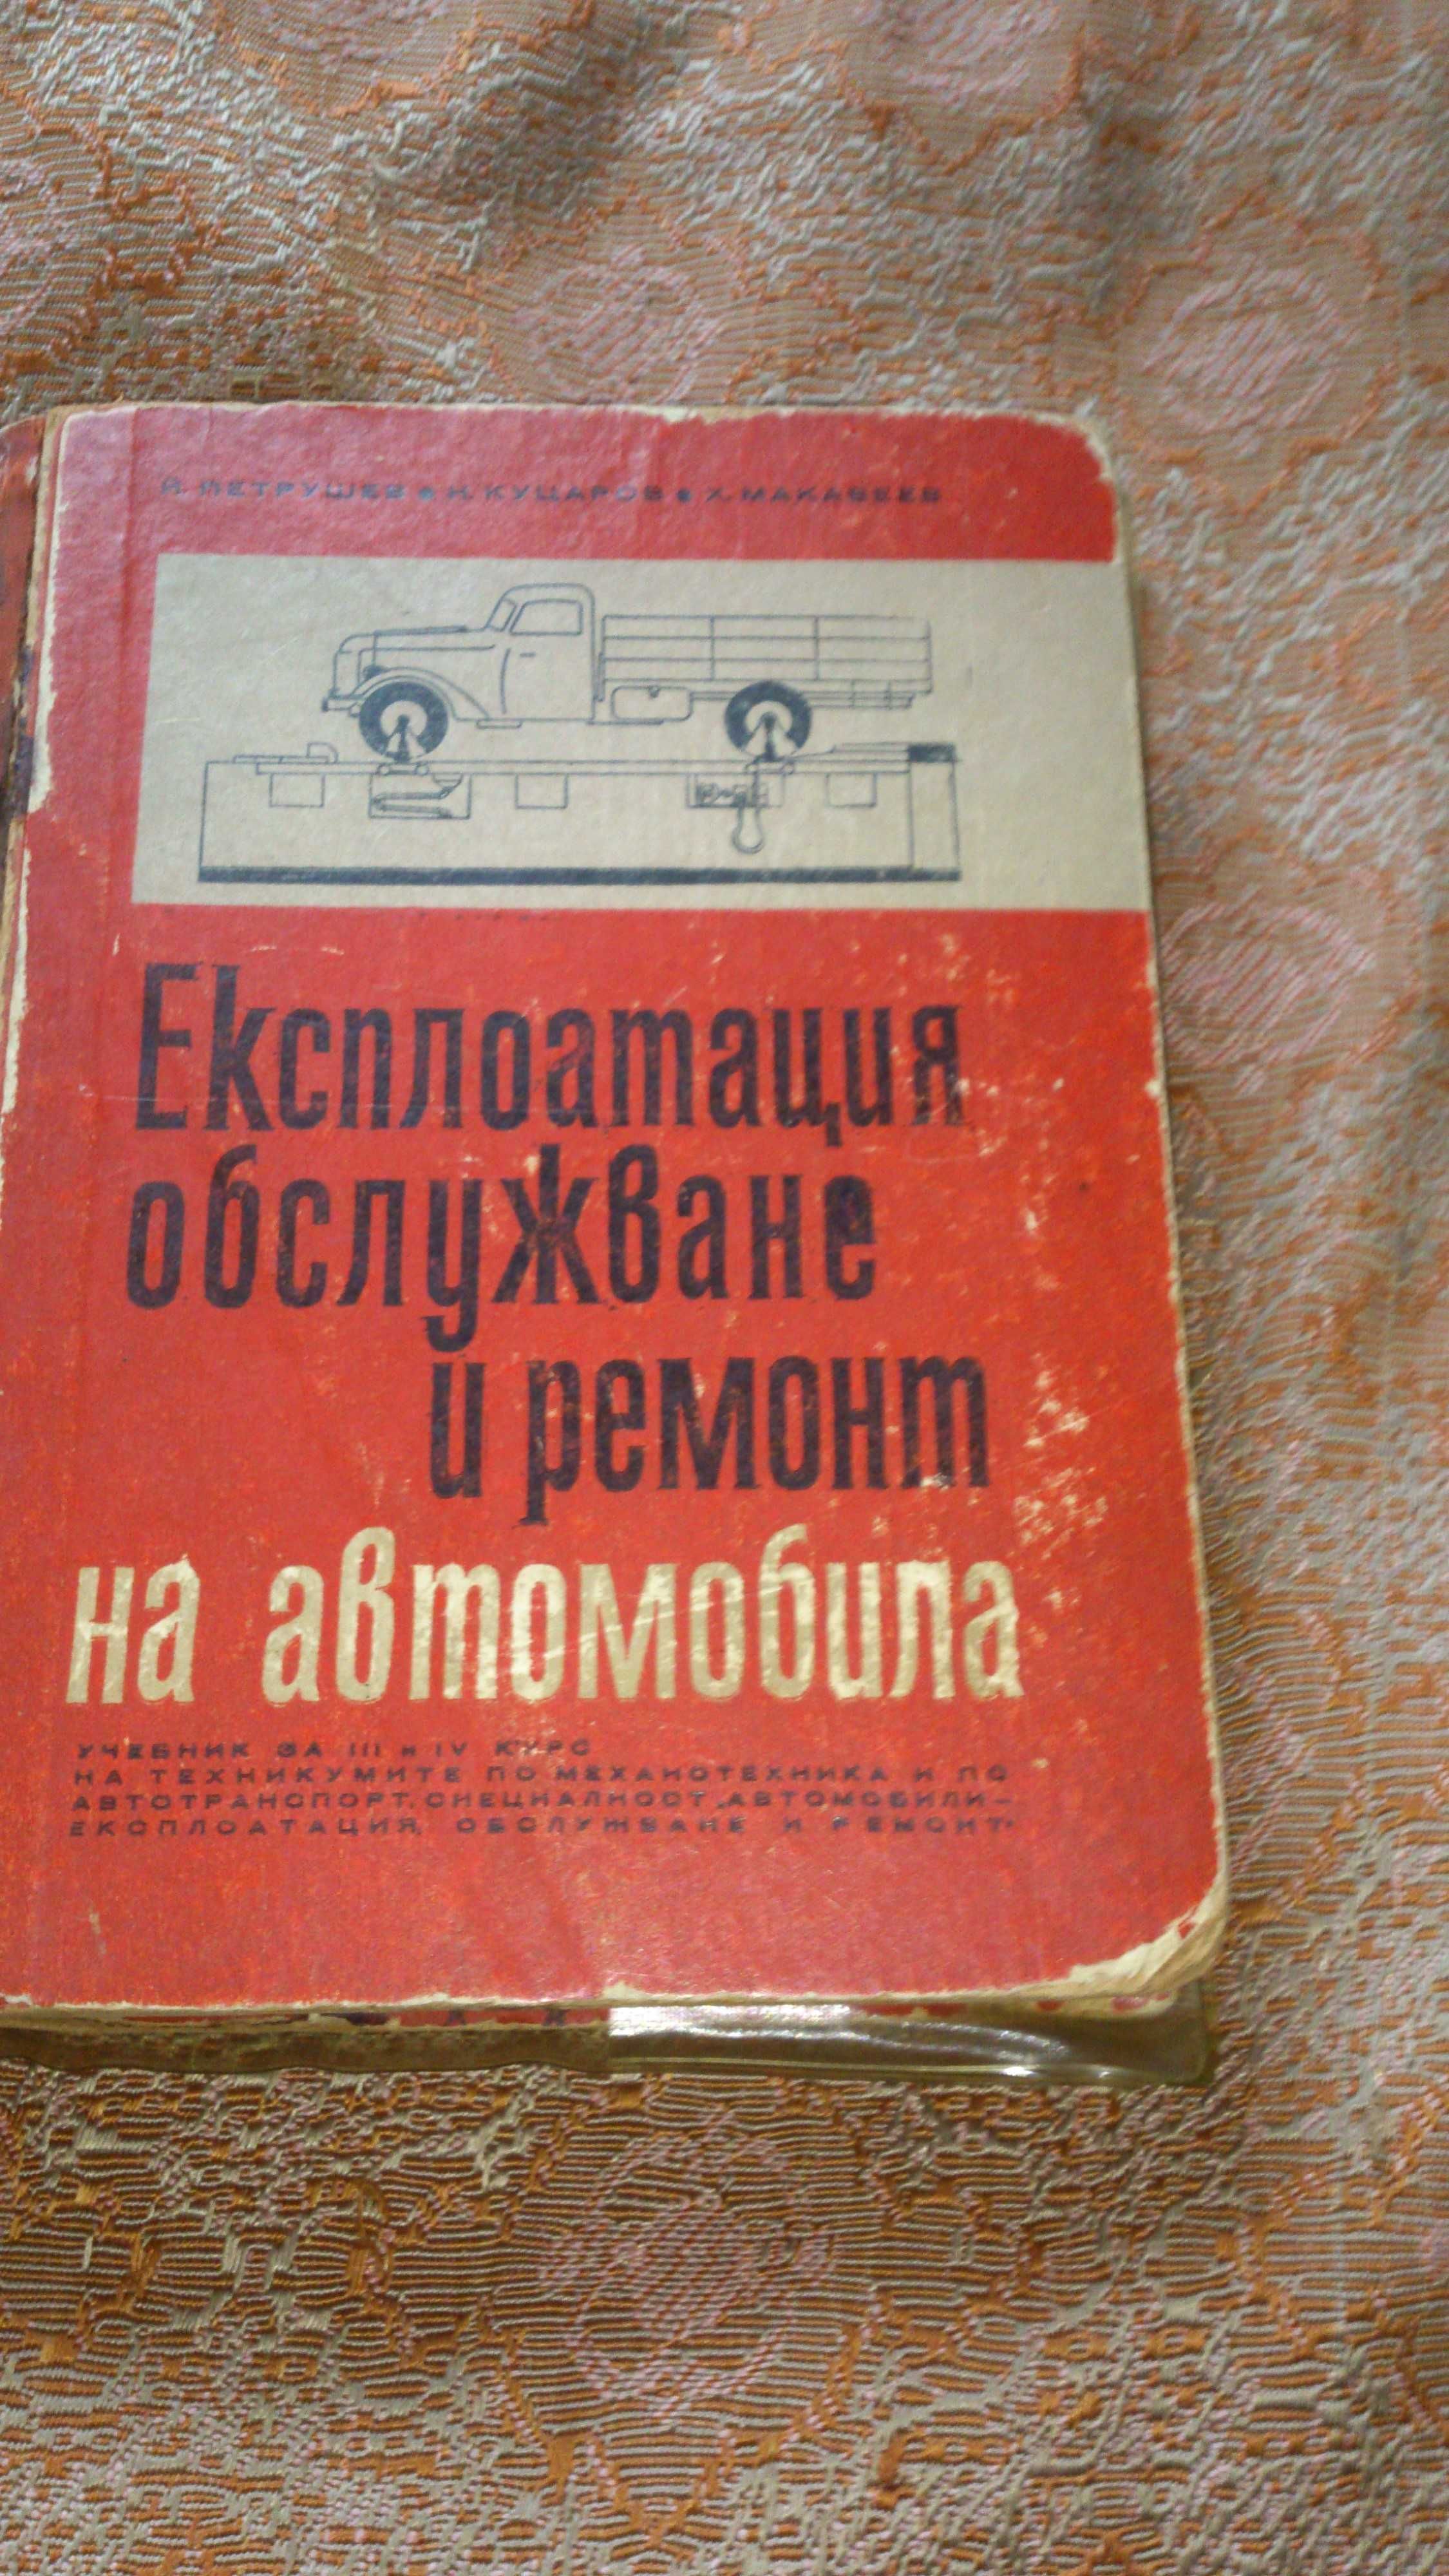 Учебник Обслужване и  ремонт на автомобила - 1967 г.